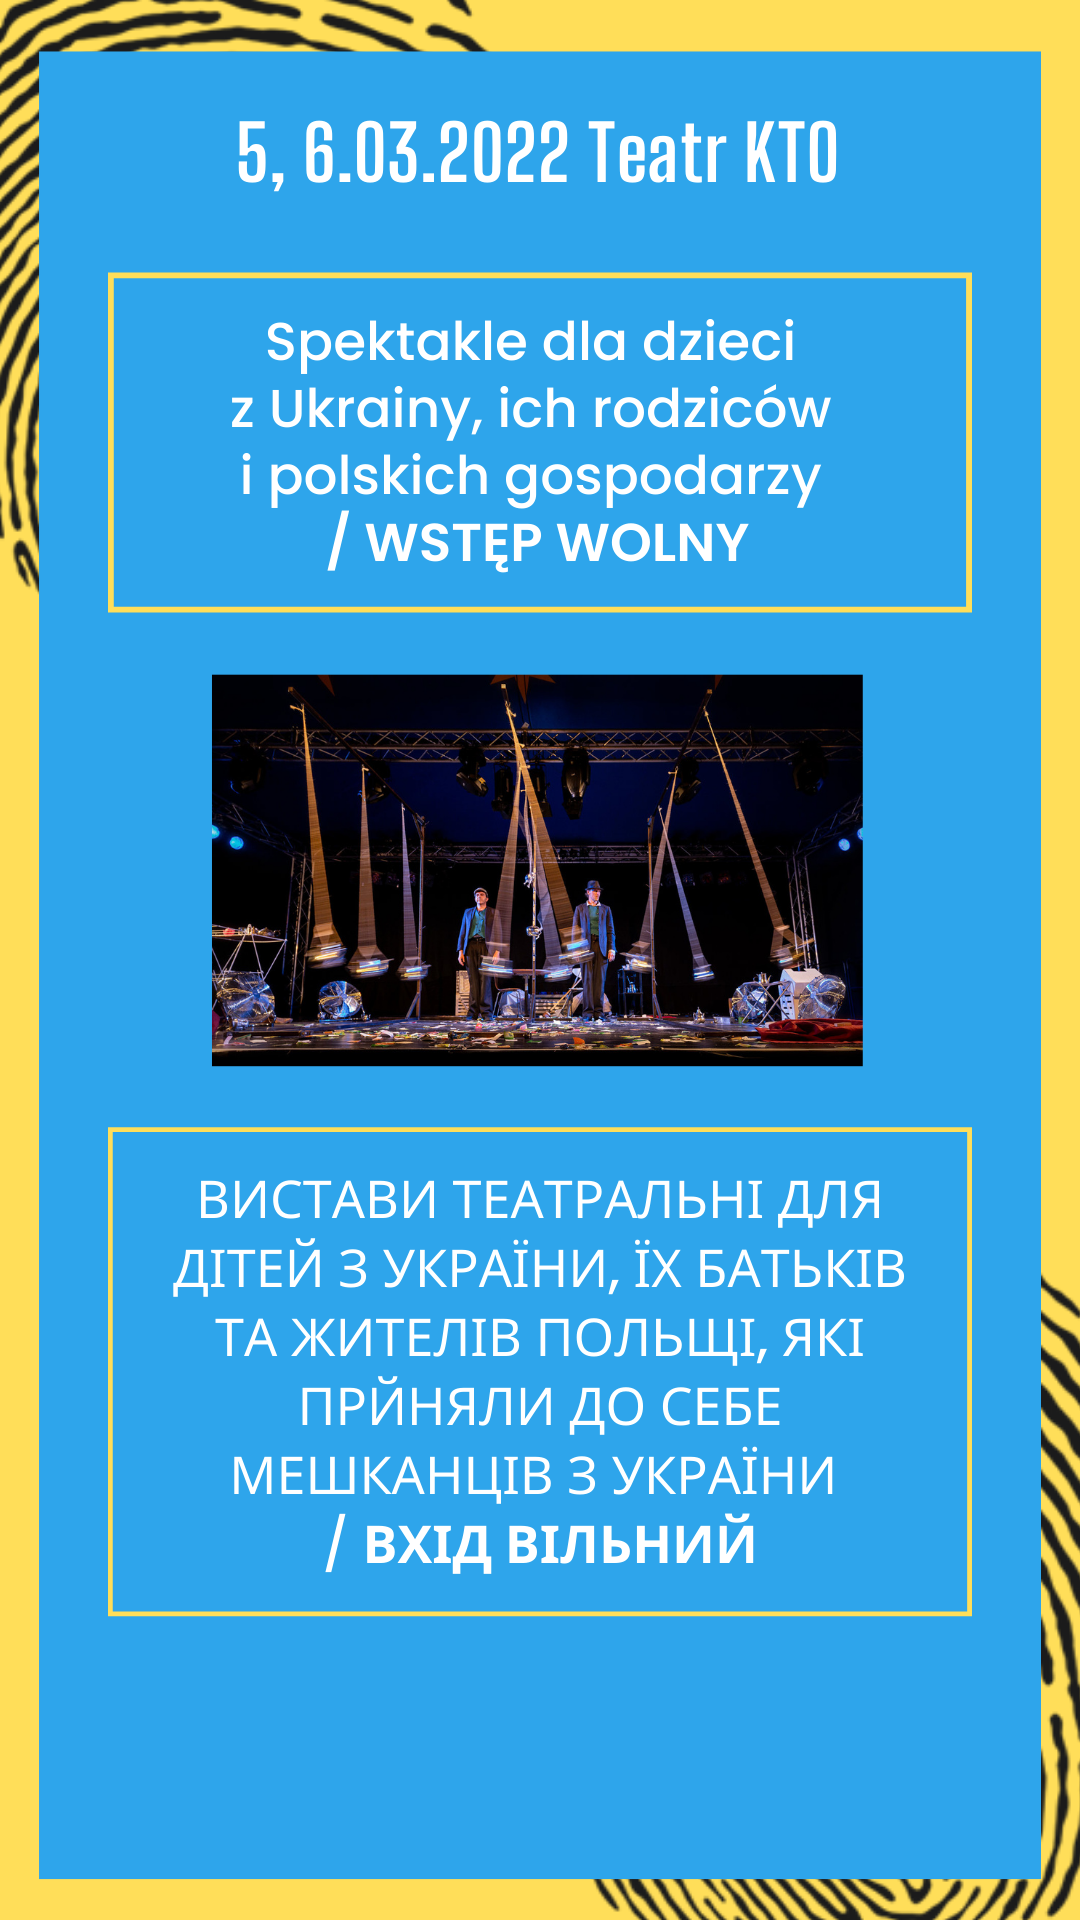 Spektakle dla dzieci z Ukrainy, ich rodziców i polskich gospodarzy